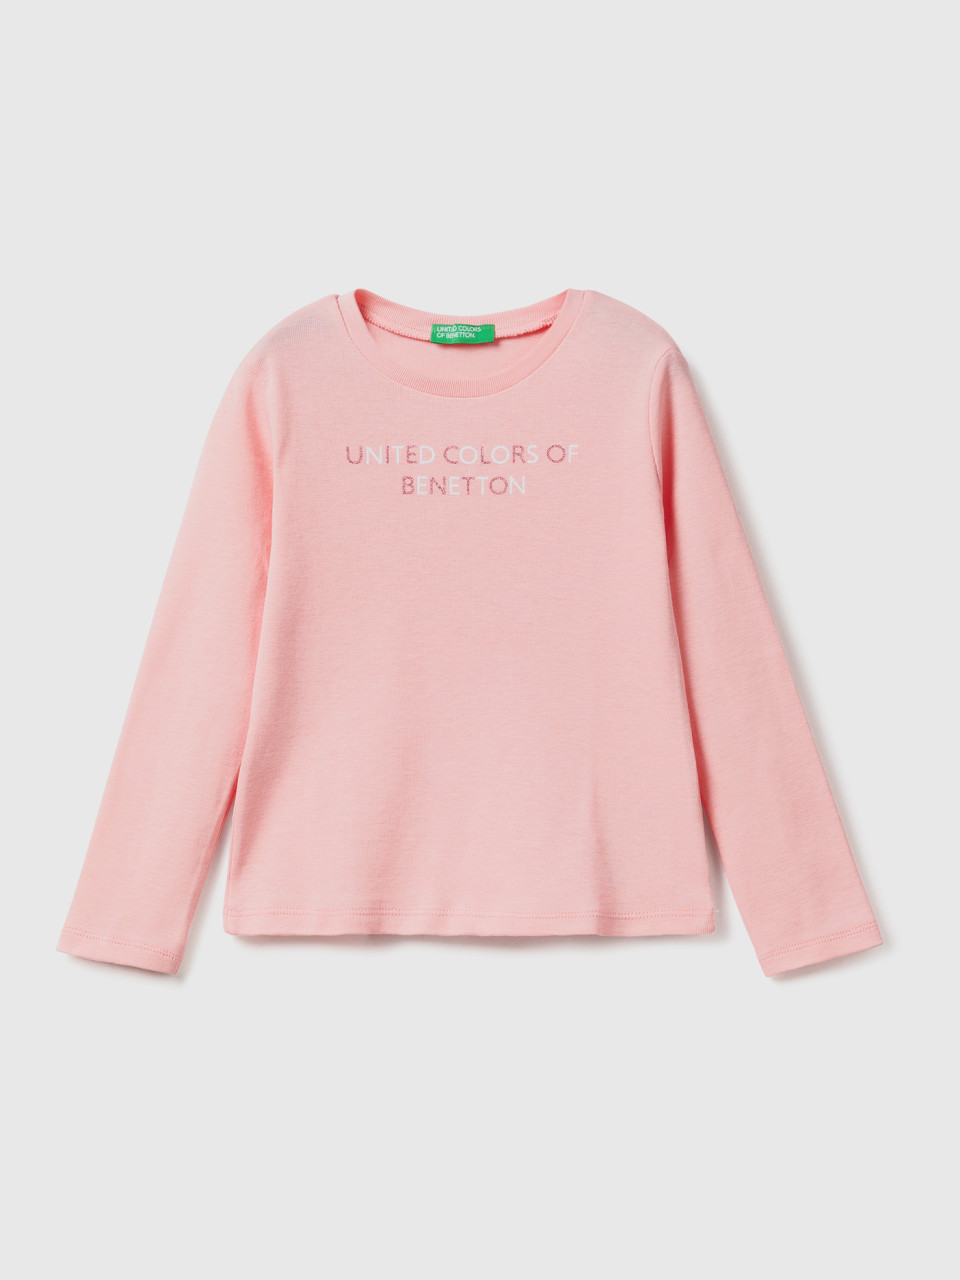 Benetton, Long Sleeve T-shirt With Glitter Print, Pink, Kids